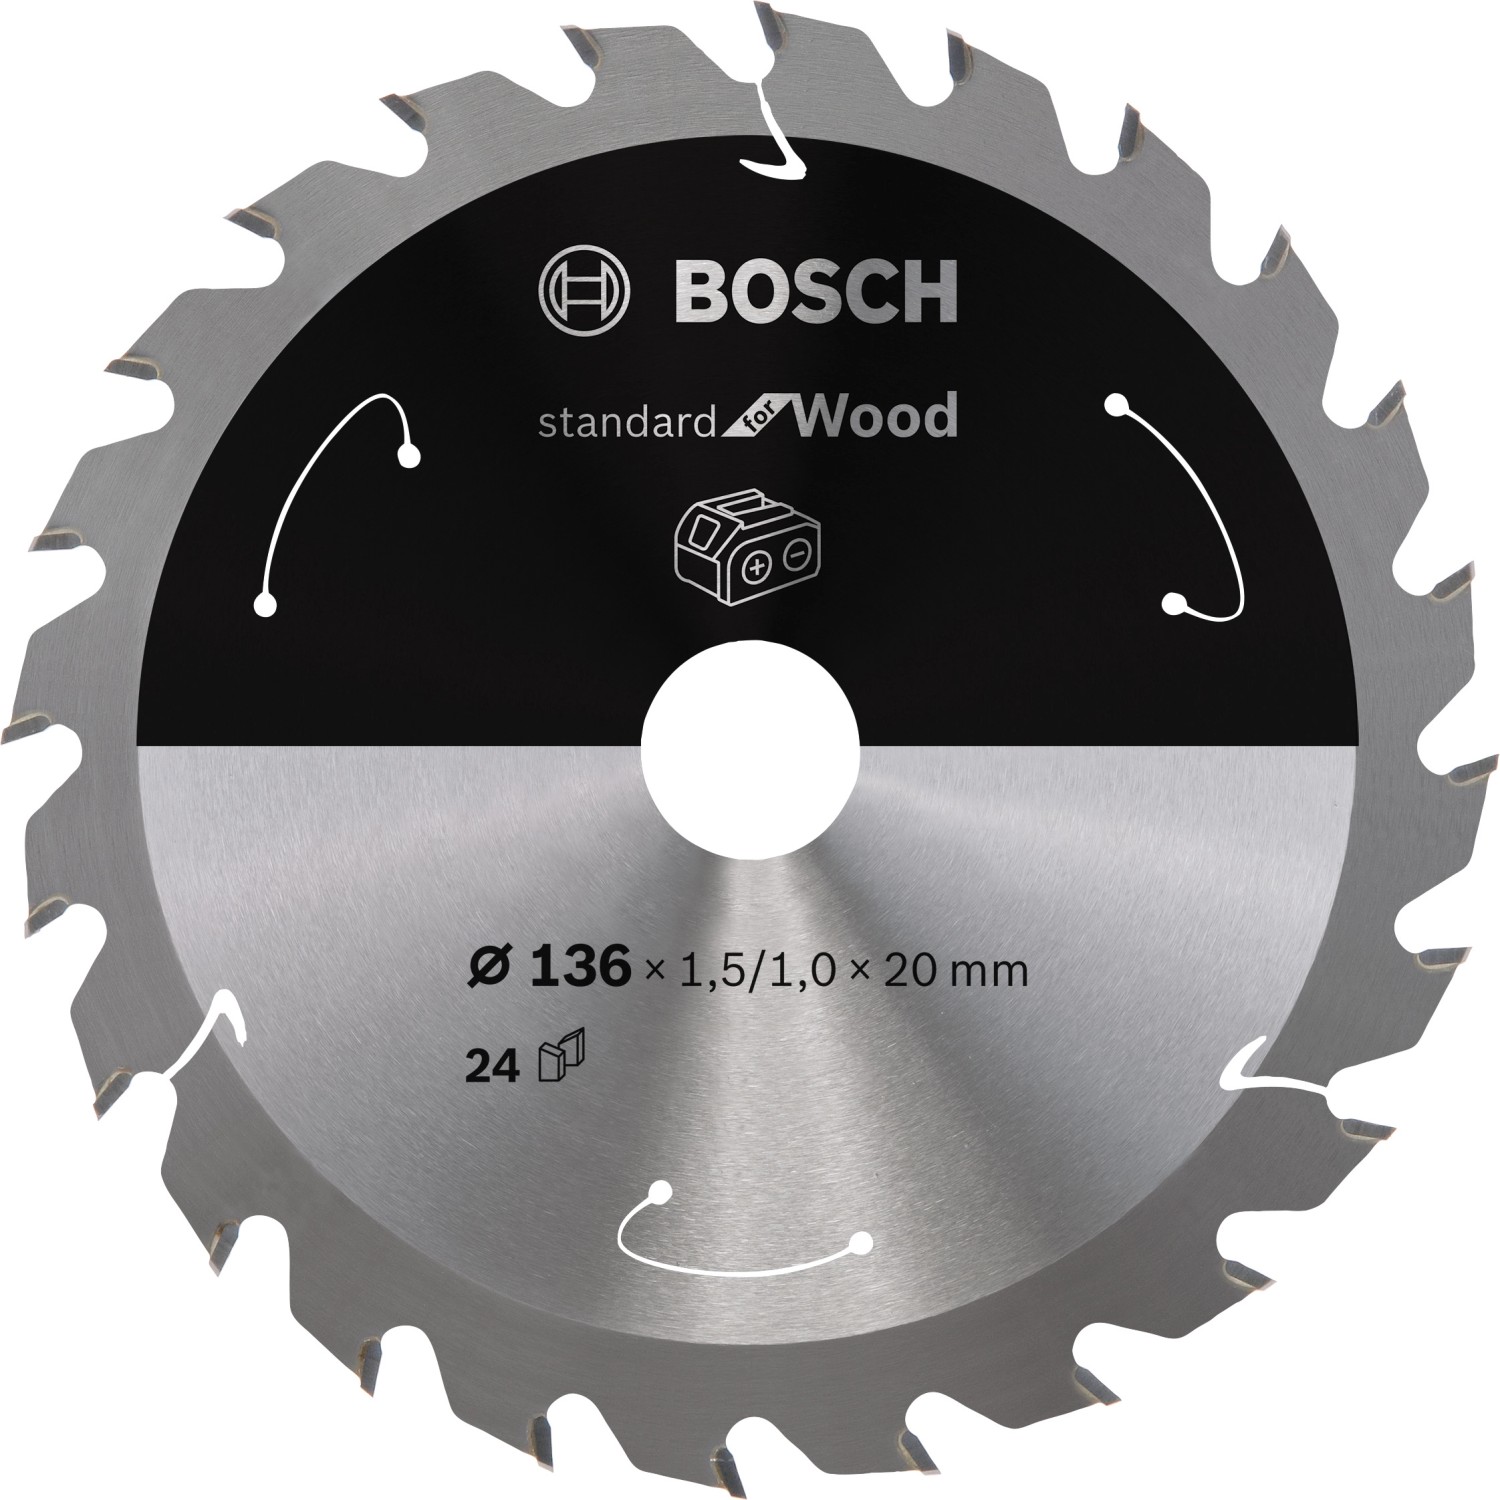 Bosch Kreissägeblatt Standard für Wood 136 mm x 15 mm x 20 mm 24 Zähne